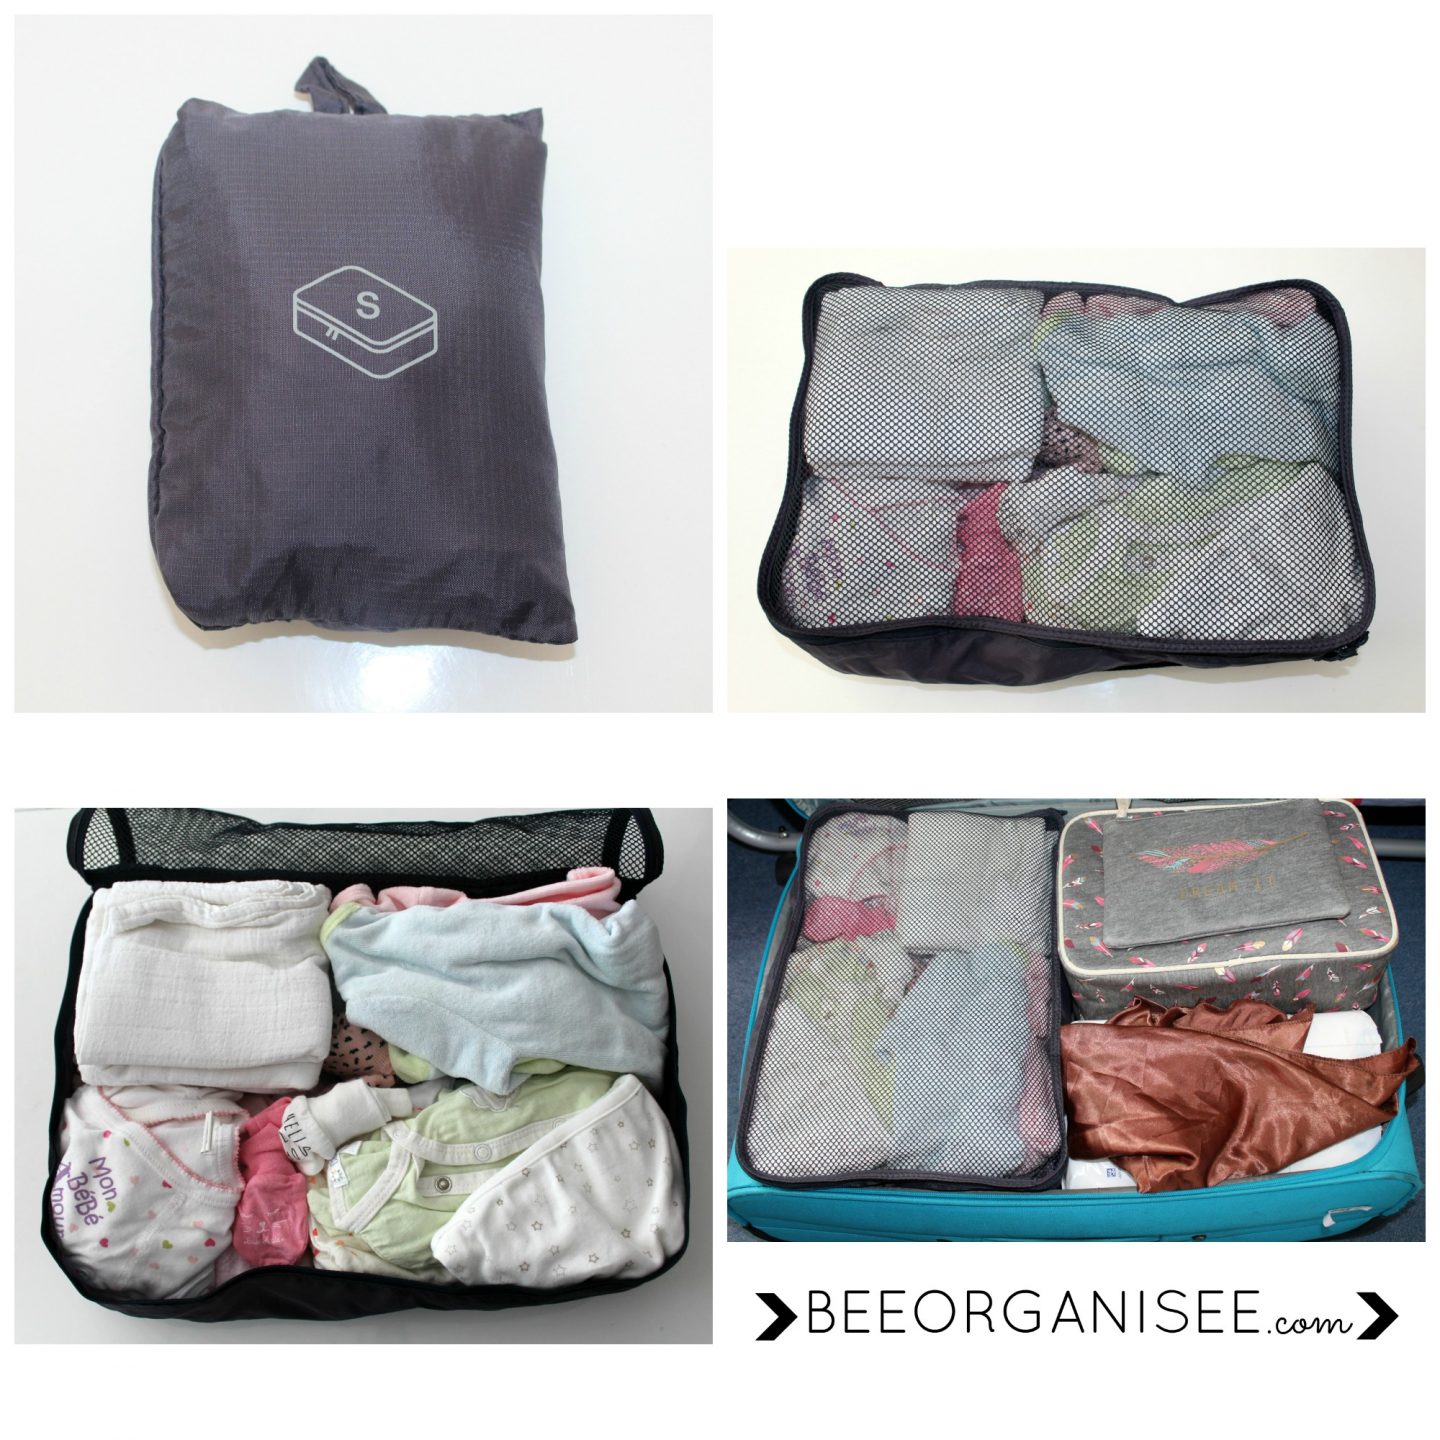 cubes de voyages - sac de rangement : indispensables pour une valise organisée! Les vêtements sont bien compactés et cela évite de trop emporter. Au retour, ils sont également très utiles pour regrouper le linge sale.